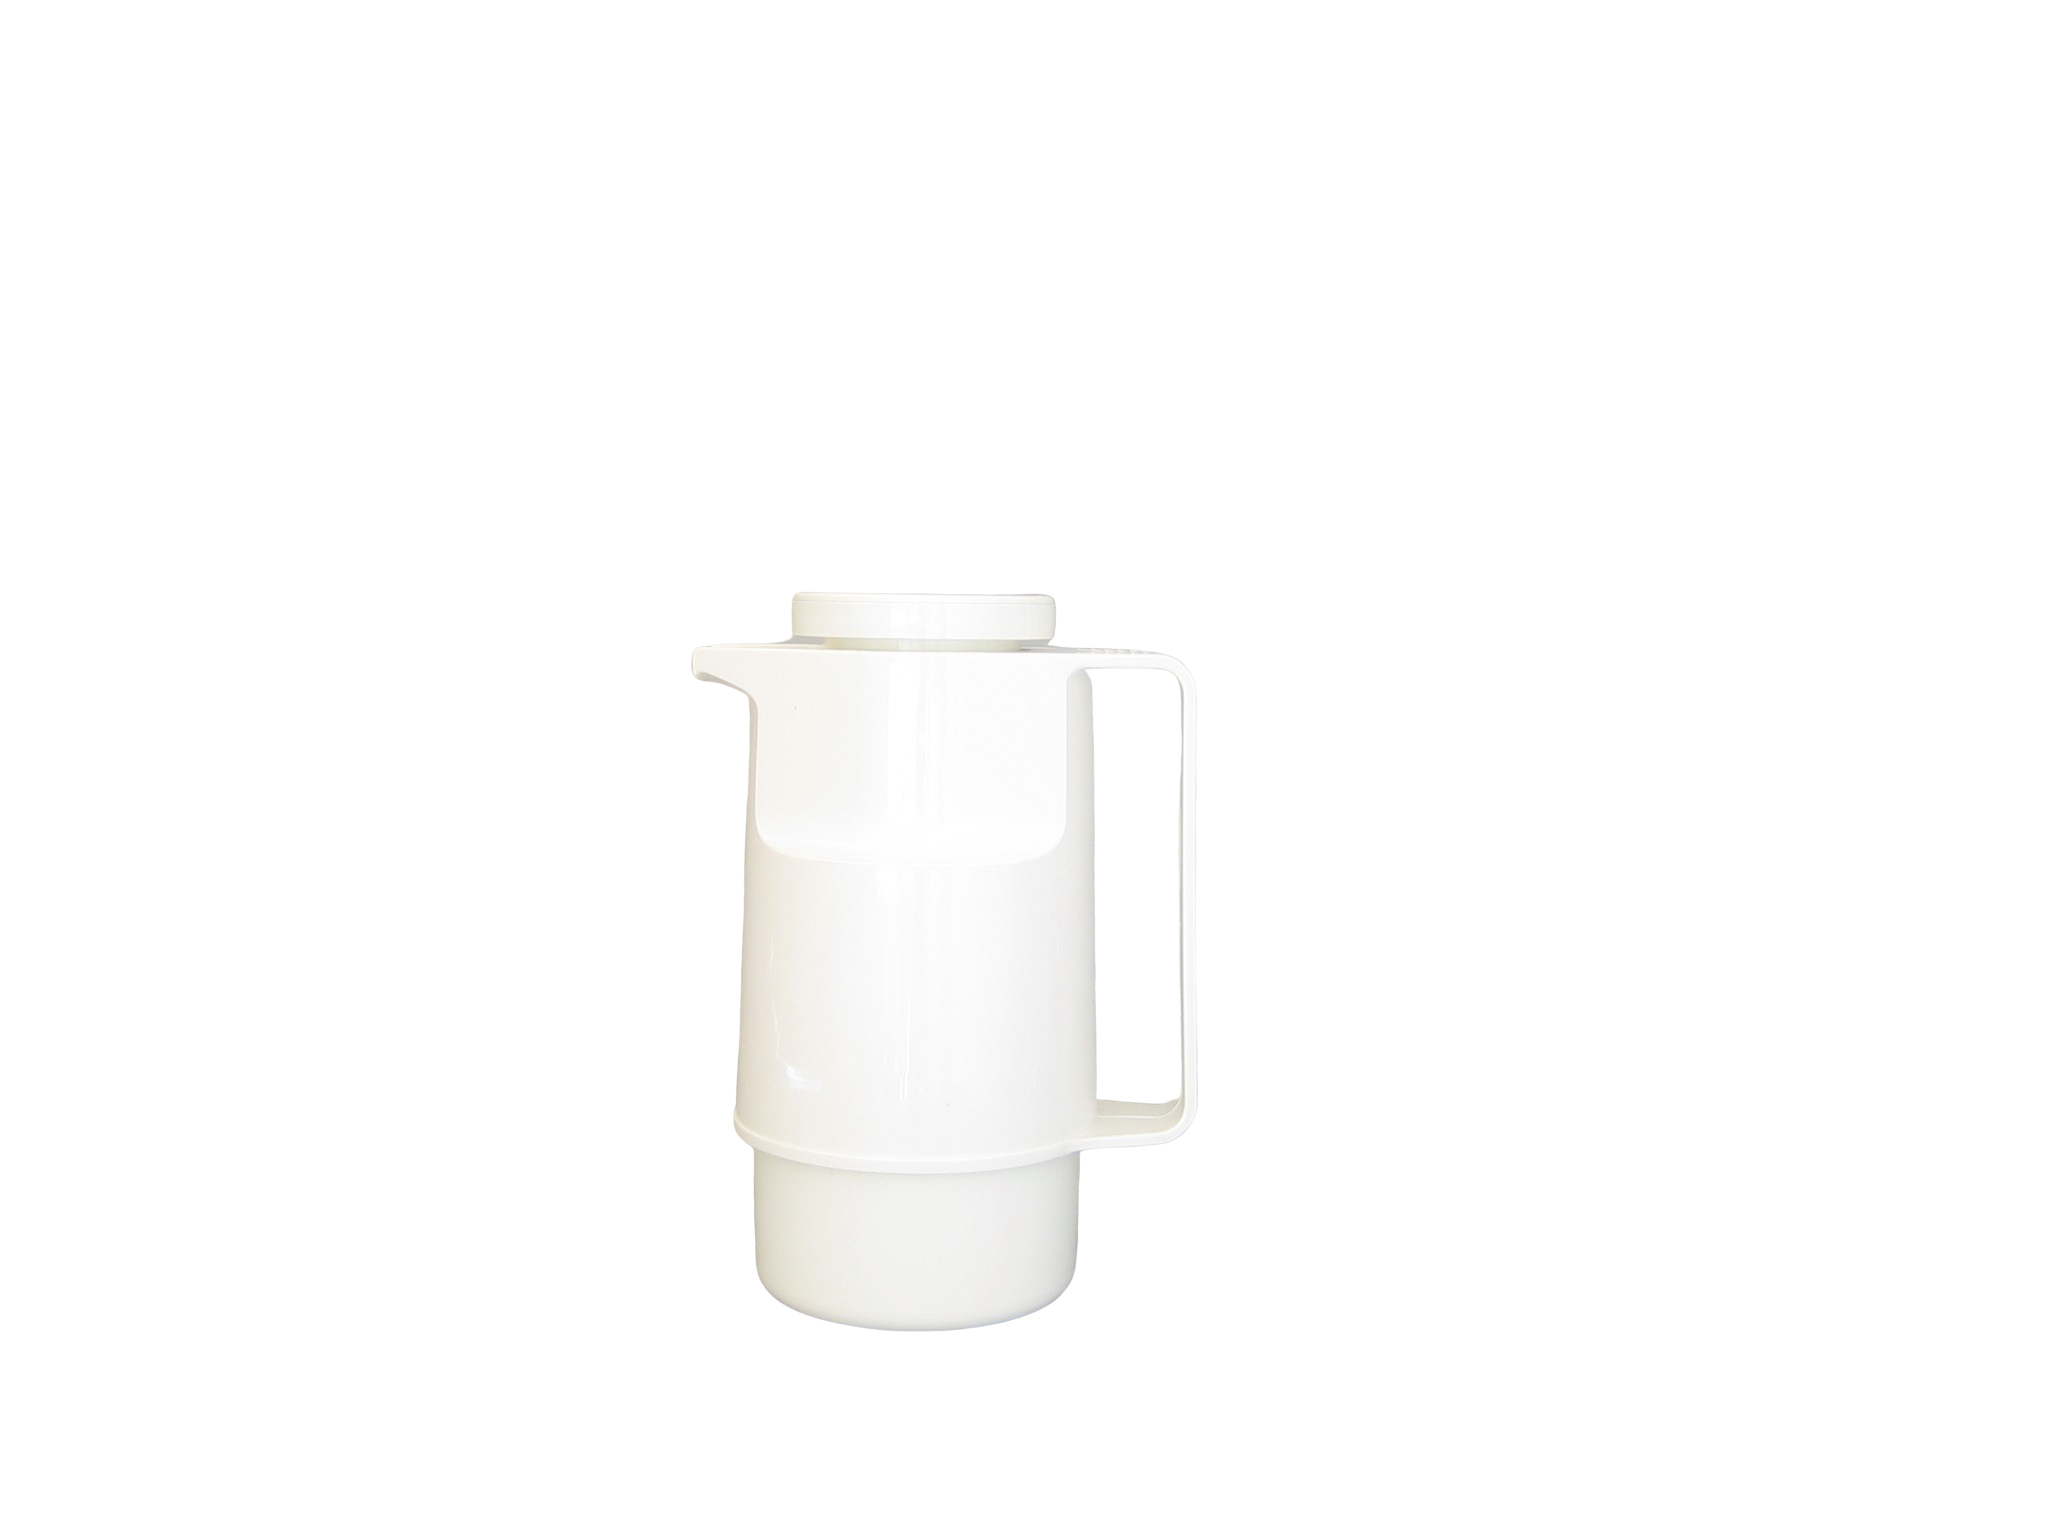 203-001 - Vacuum carafe ABS white 0.30 L - Isobel